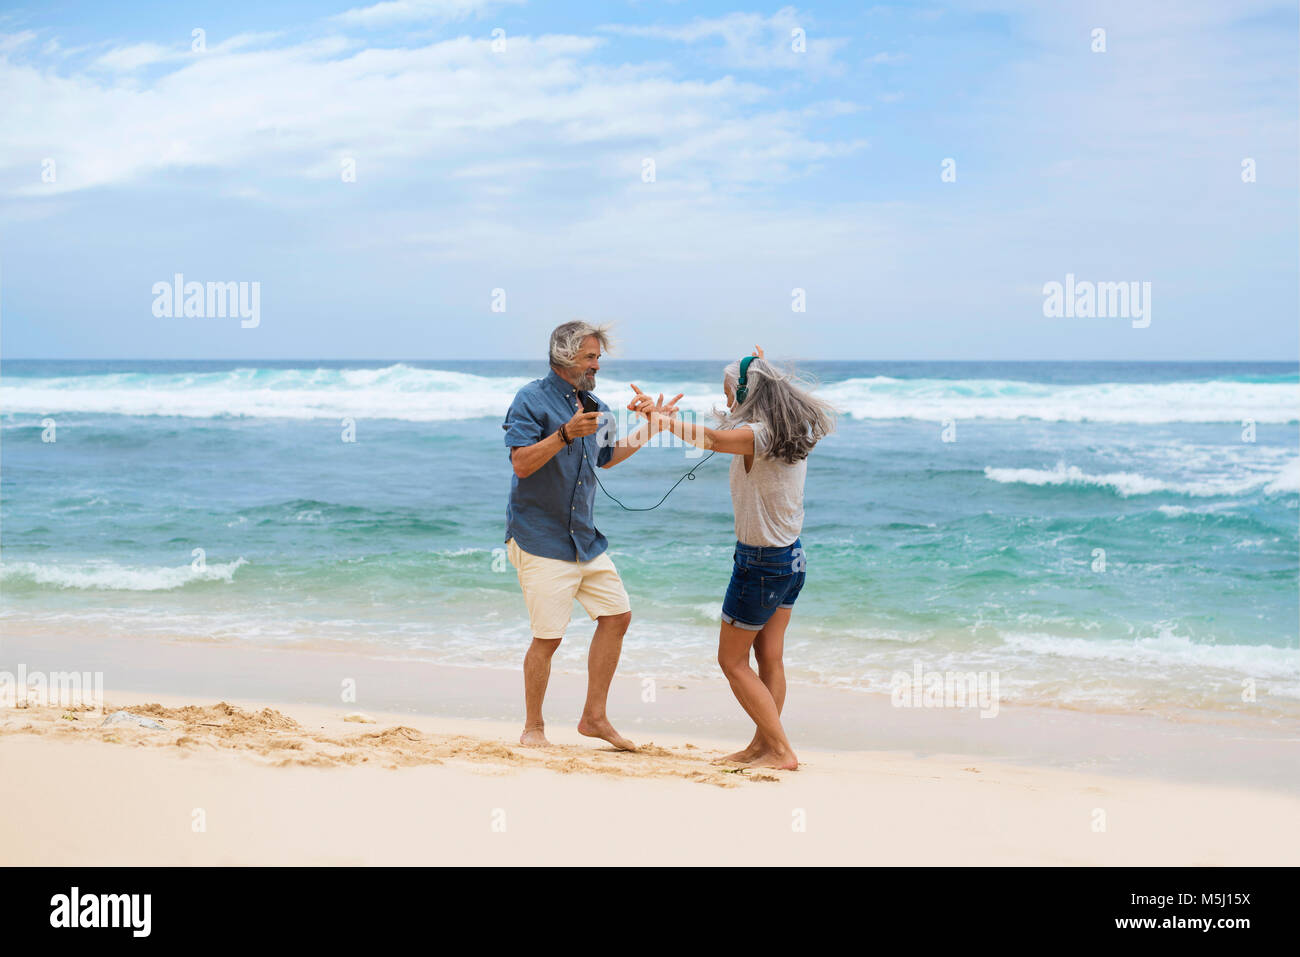 Beau couple avec des écouteurs Dancing on the beach Banque D'Images